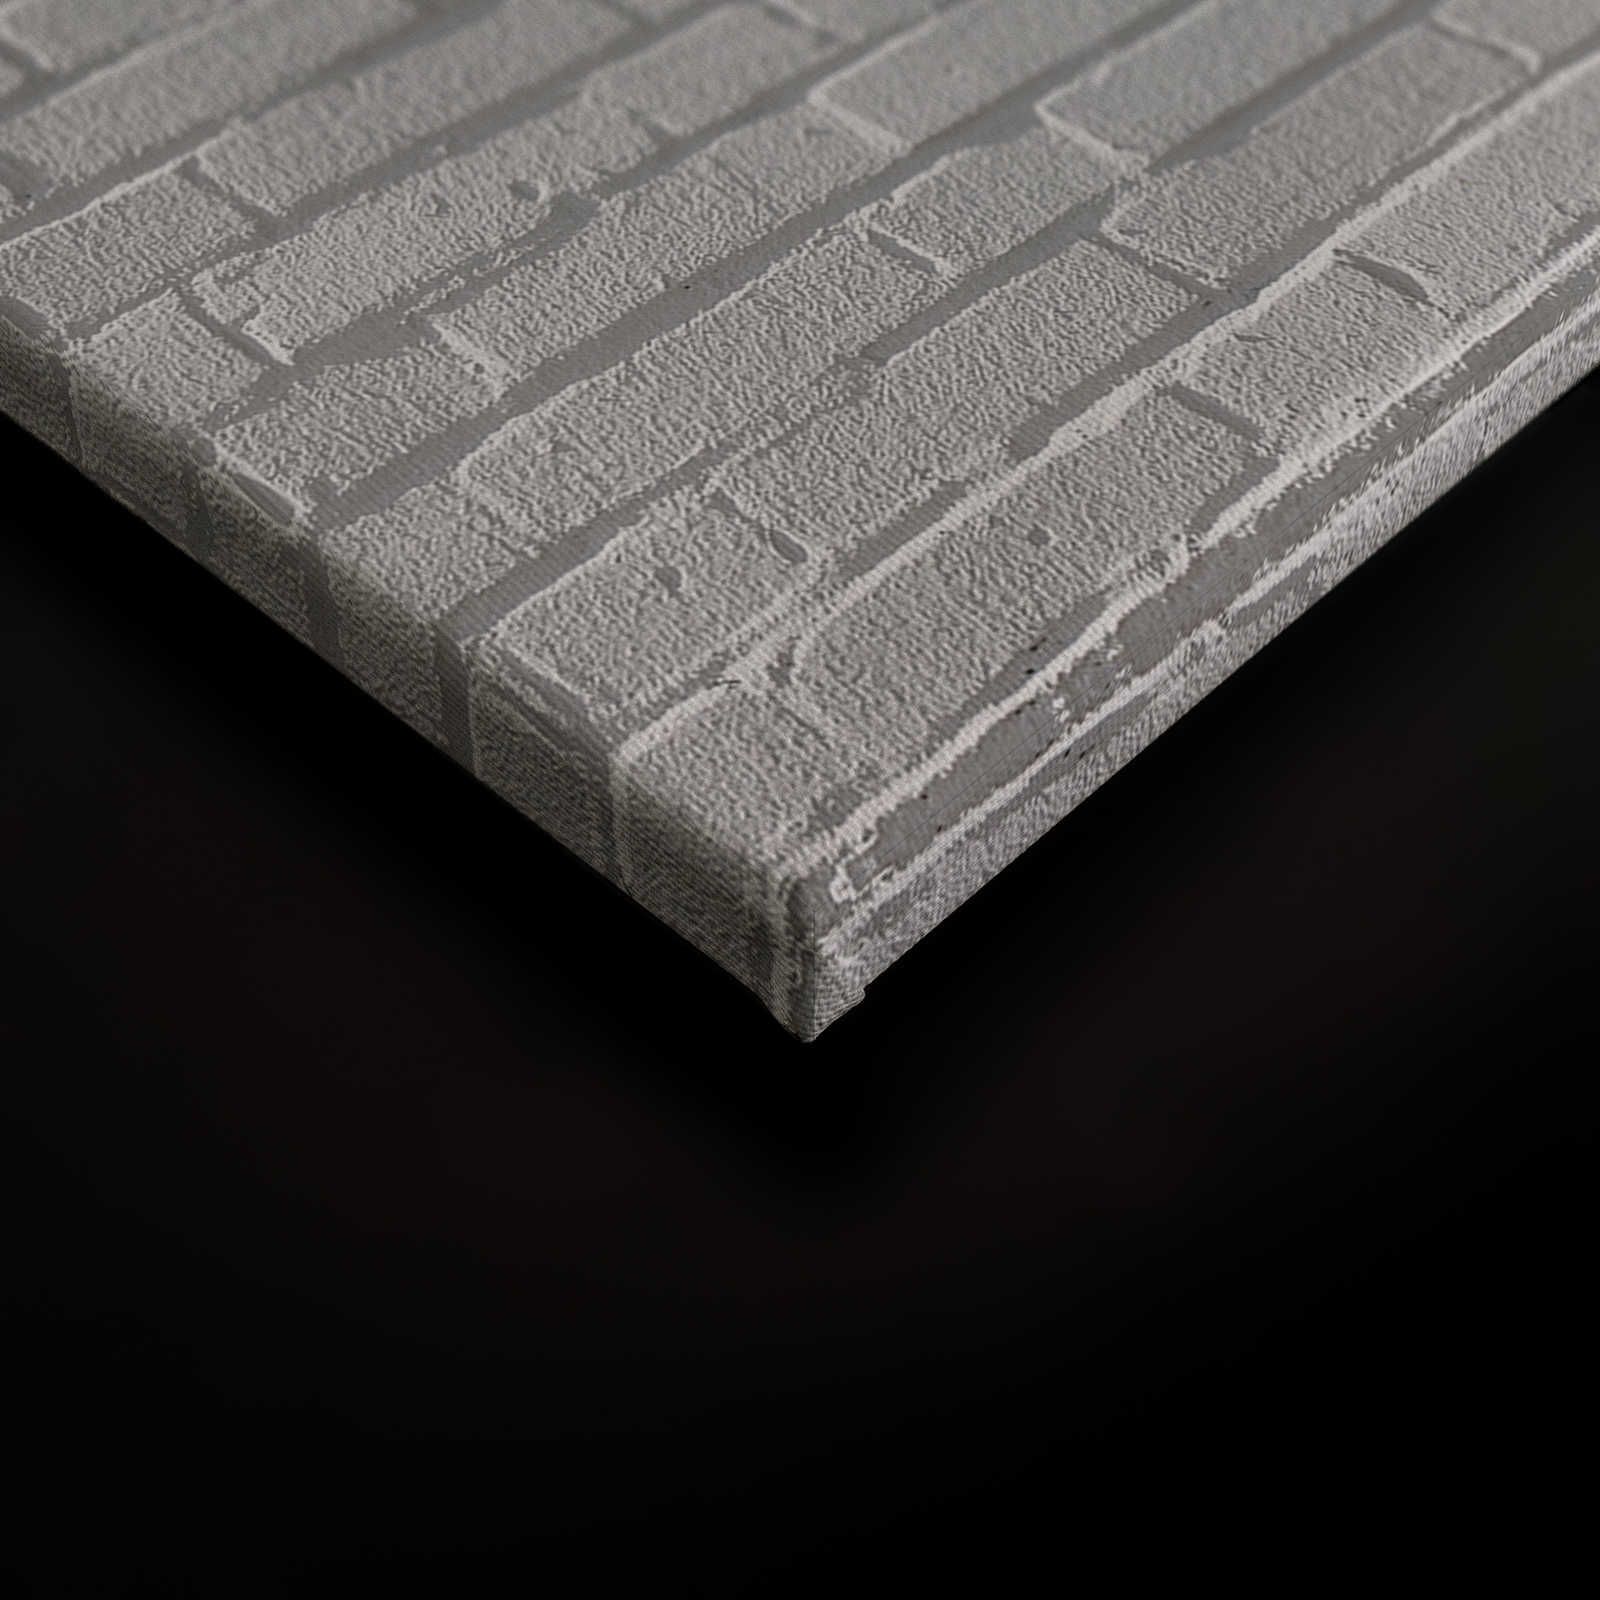             Lienzo pared de ladrillo gris en 3D - 0,90 m x 0,60 m
        